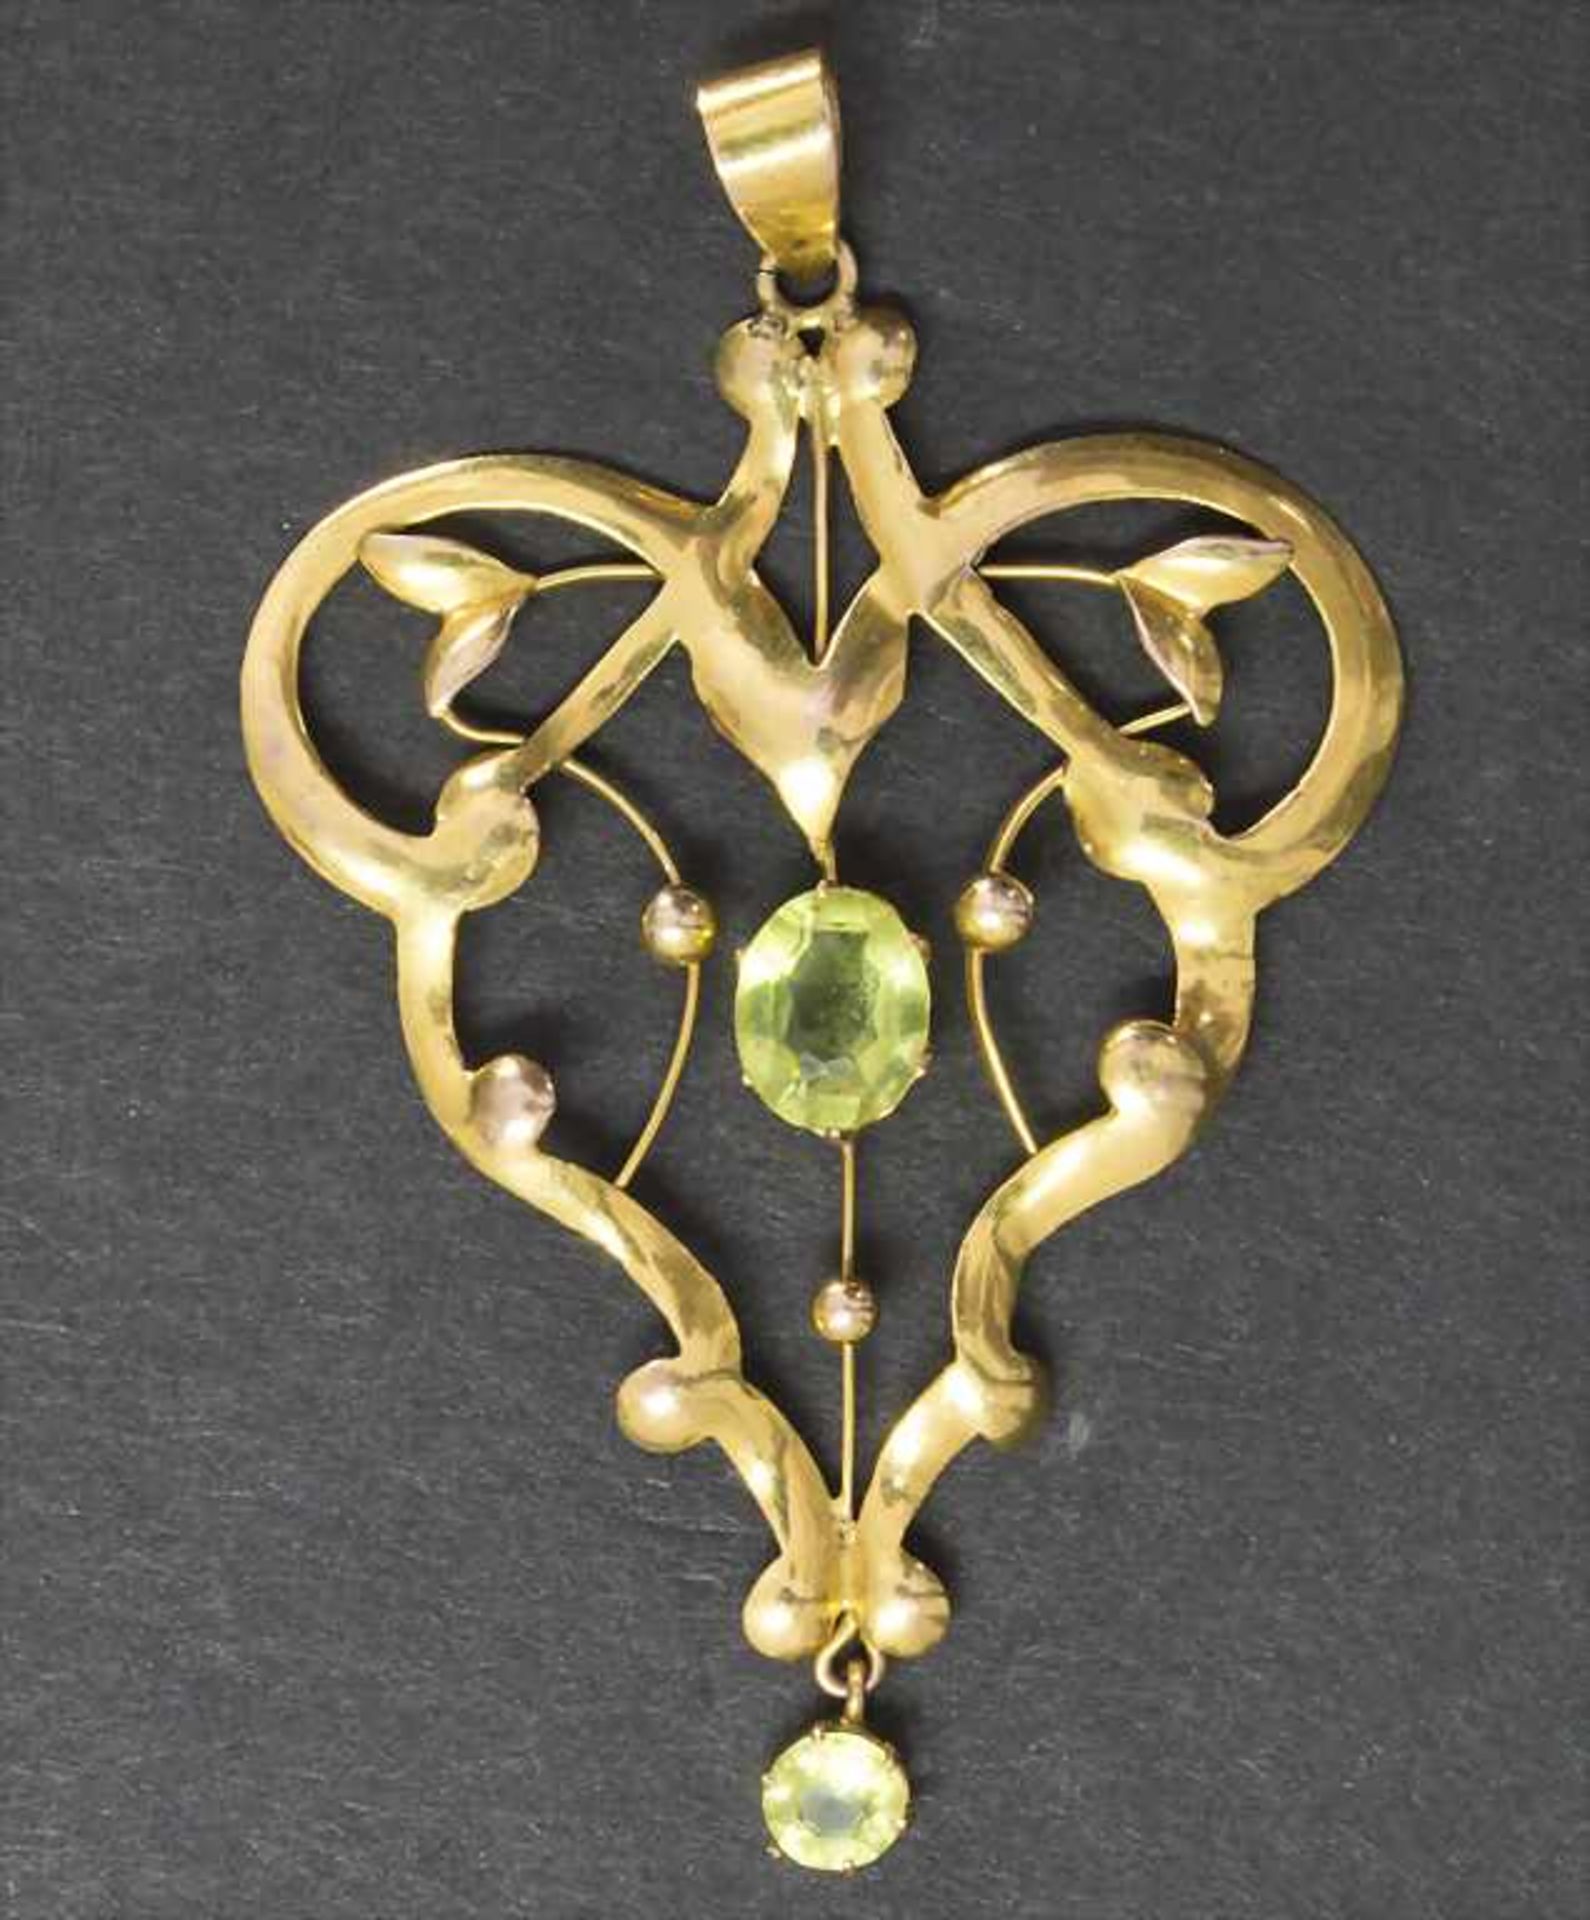 Jugendstil Anhänger / An Art Nouveau pendant, England, um 1900Material: Gelbgold, grüner Peridot/